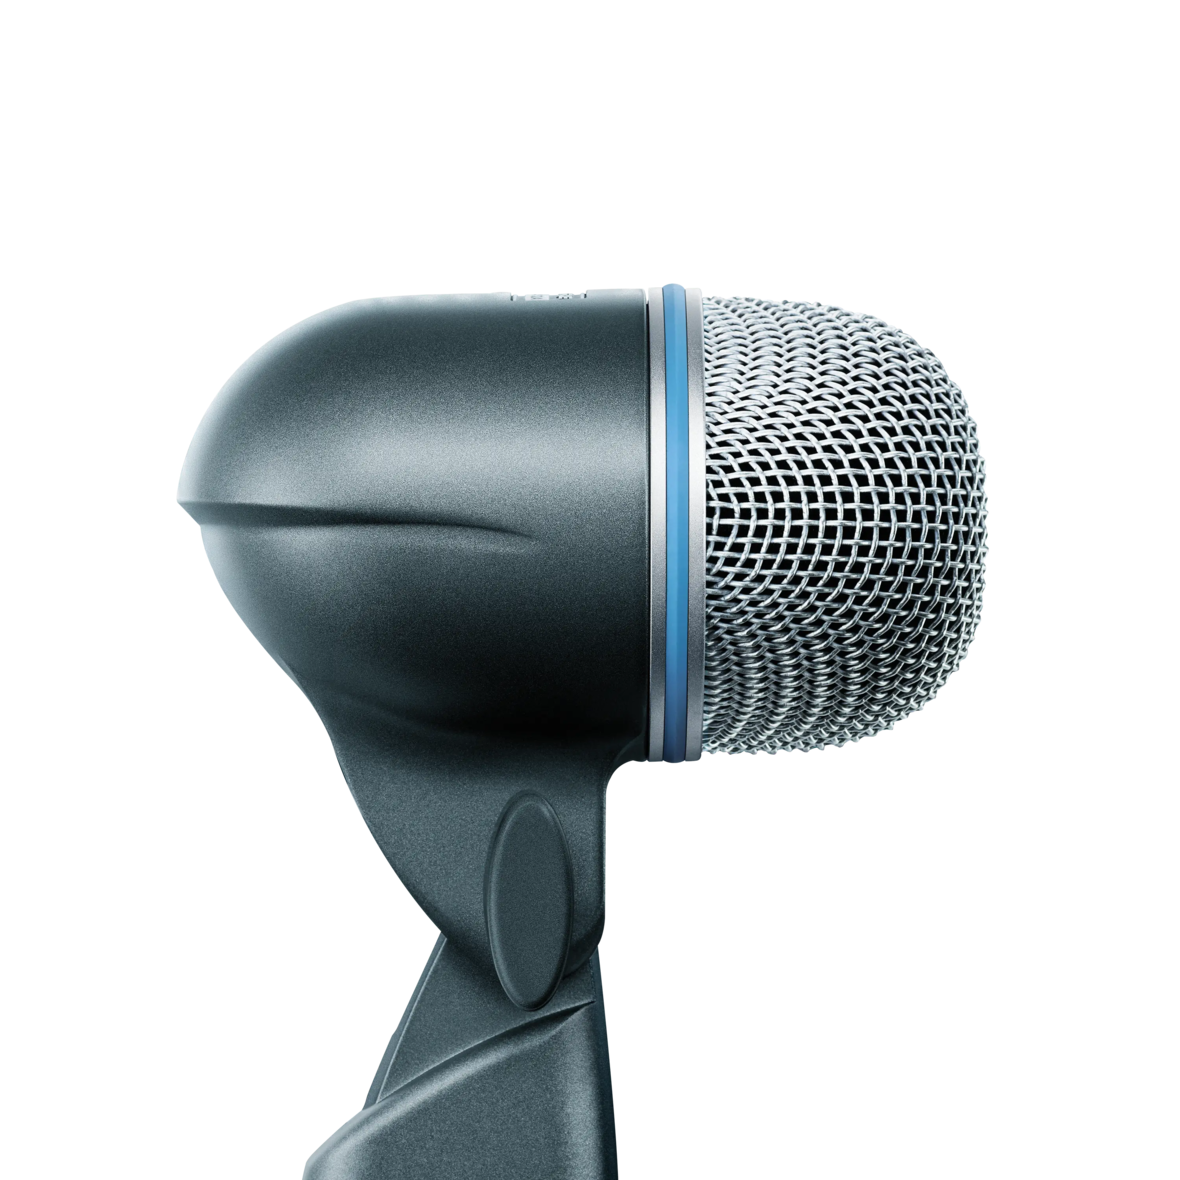 Microfono Shure Beta 52a Para Bombo Super Cardioide